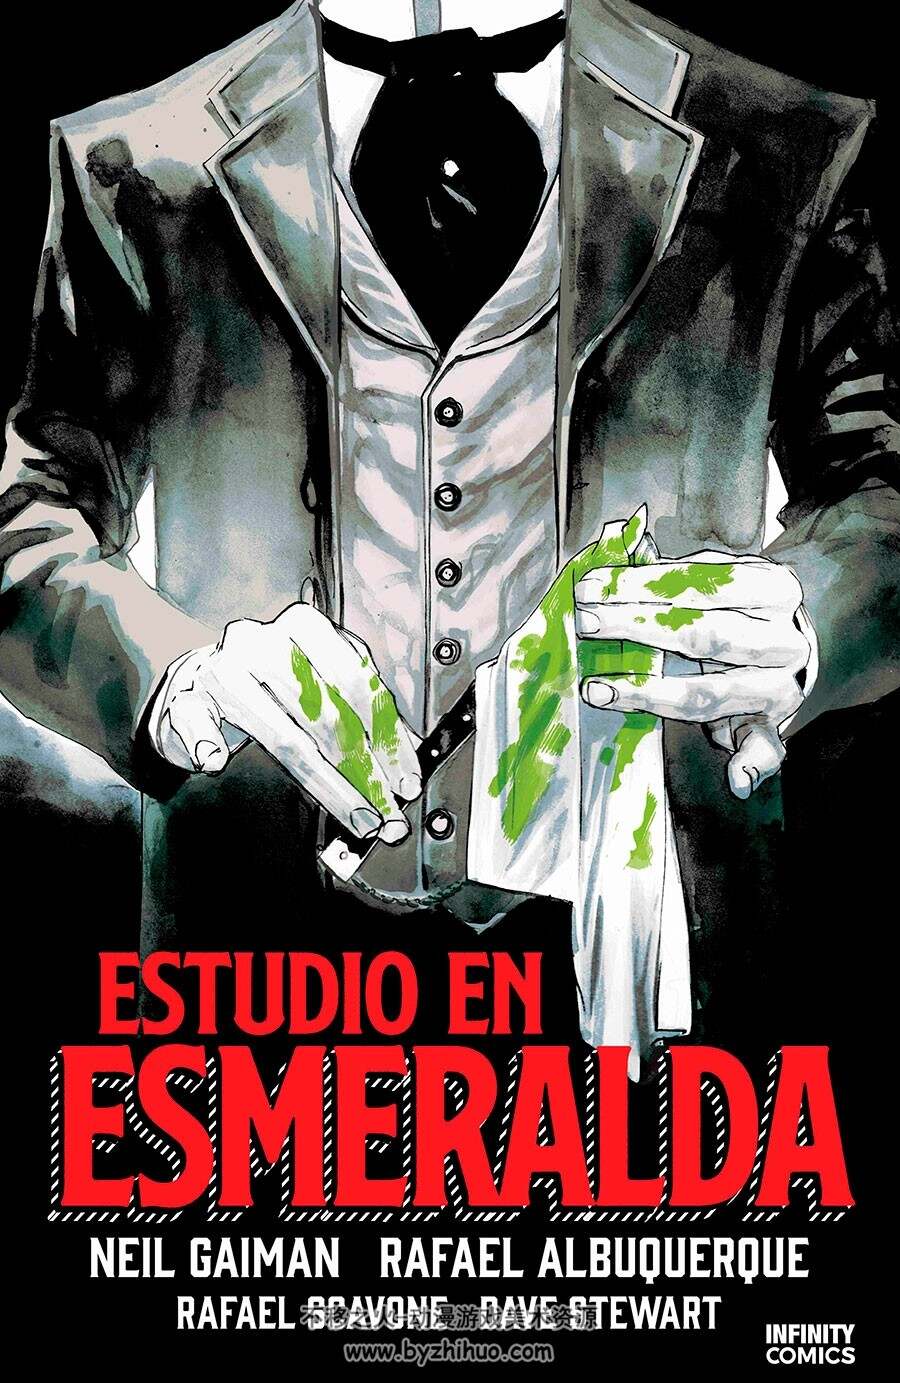 Estudio en Esmeralda -A Study in Emerald 全一册 NEIL GAIMAN - RAFLA ALBUQUE